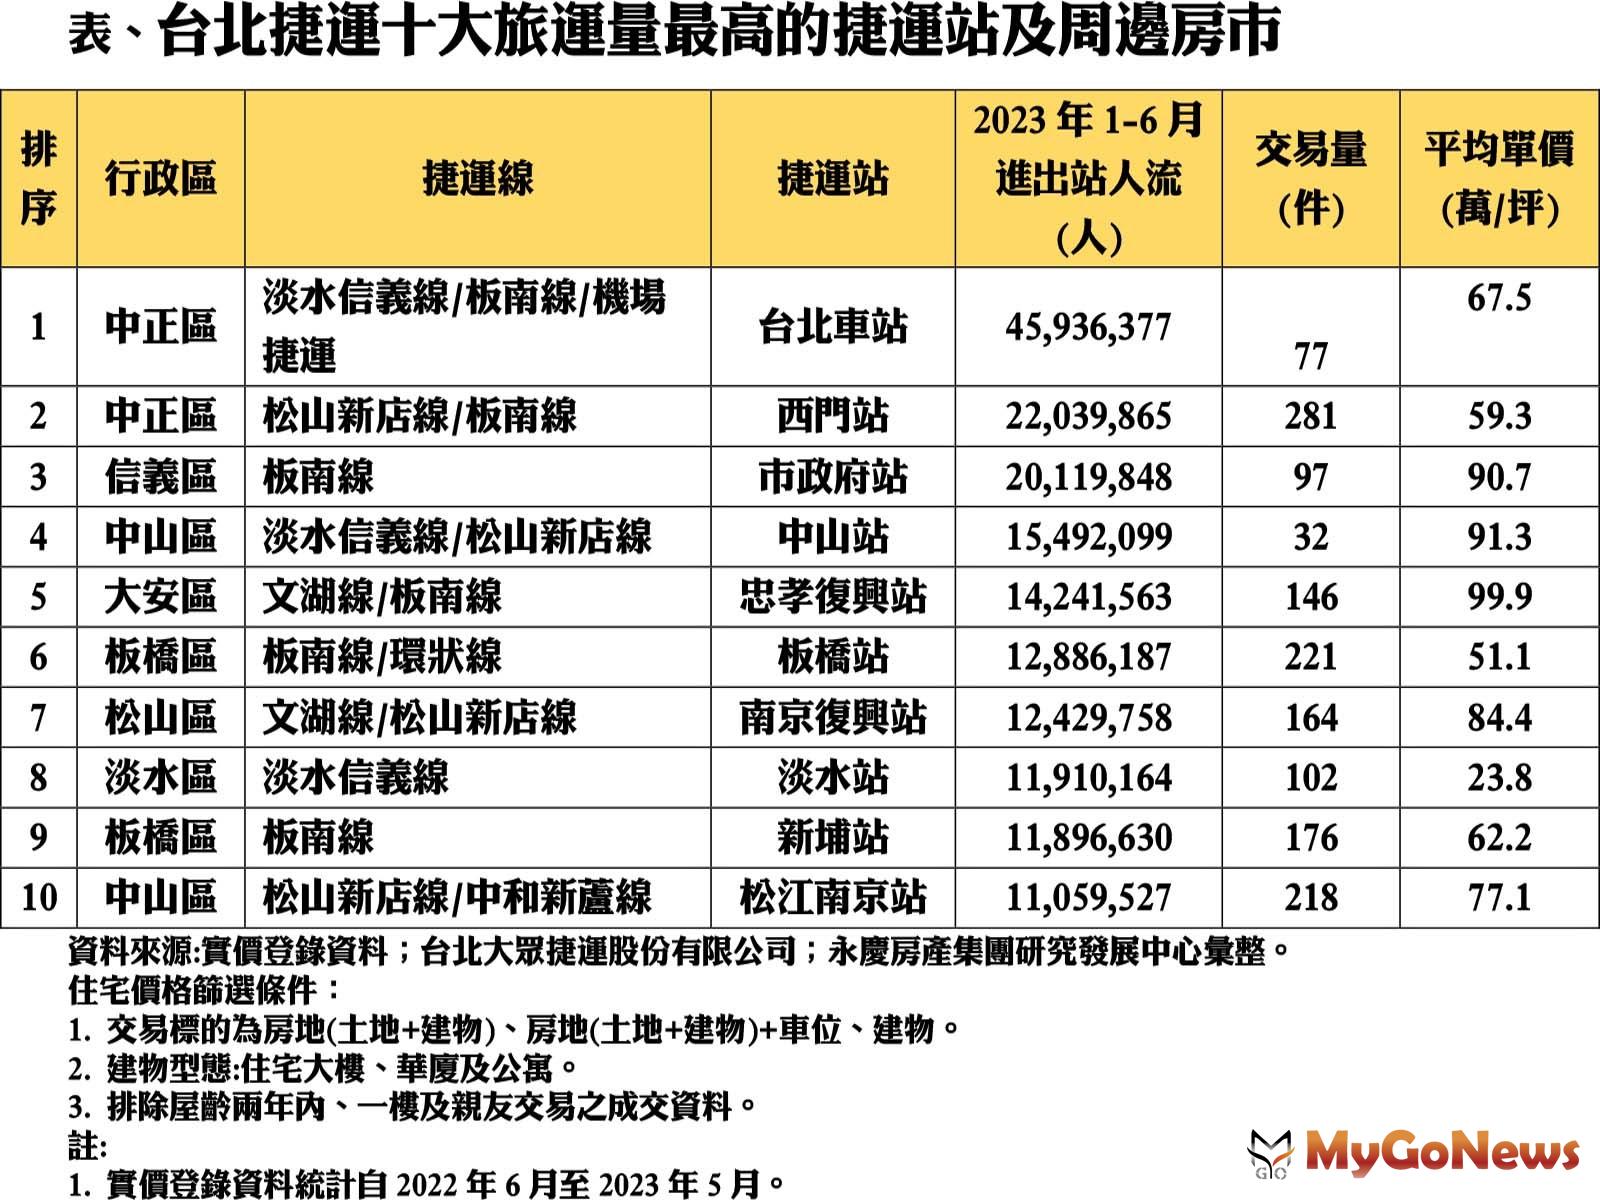 台北捷運十大旅運量最高的捷運站及周邊房市表現 MyGoNews房地產新聞 市場快訊